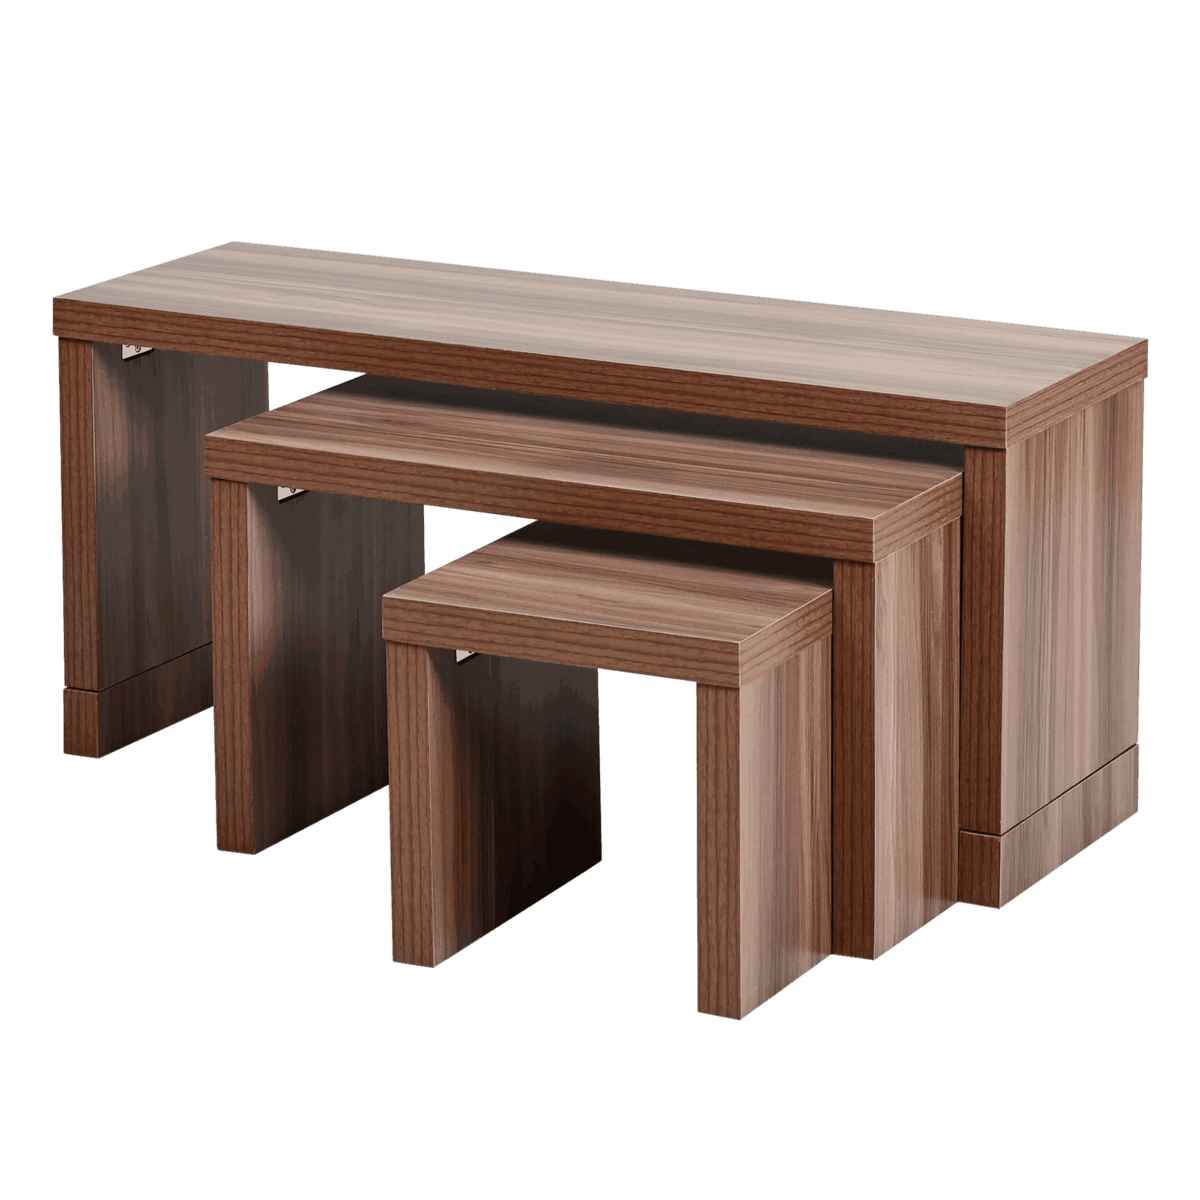 ローテーブル ネストテーブル コの字テーブル 木目調 オシャレコチラは2個セットの品ですか